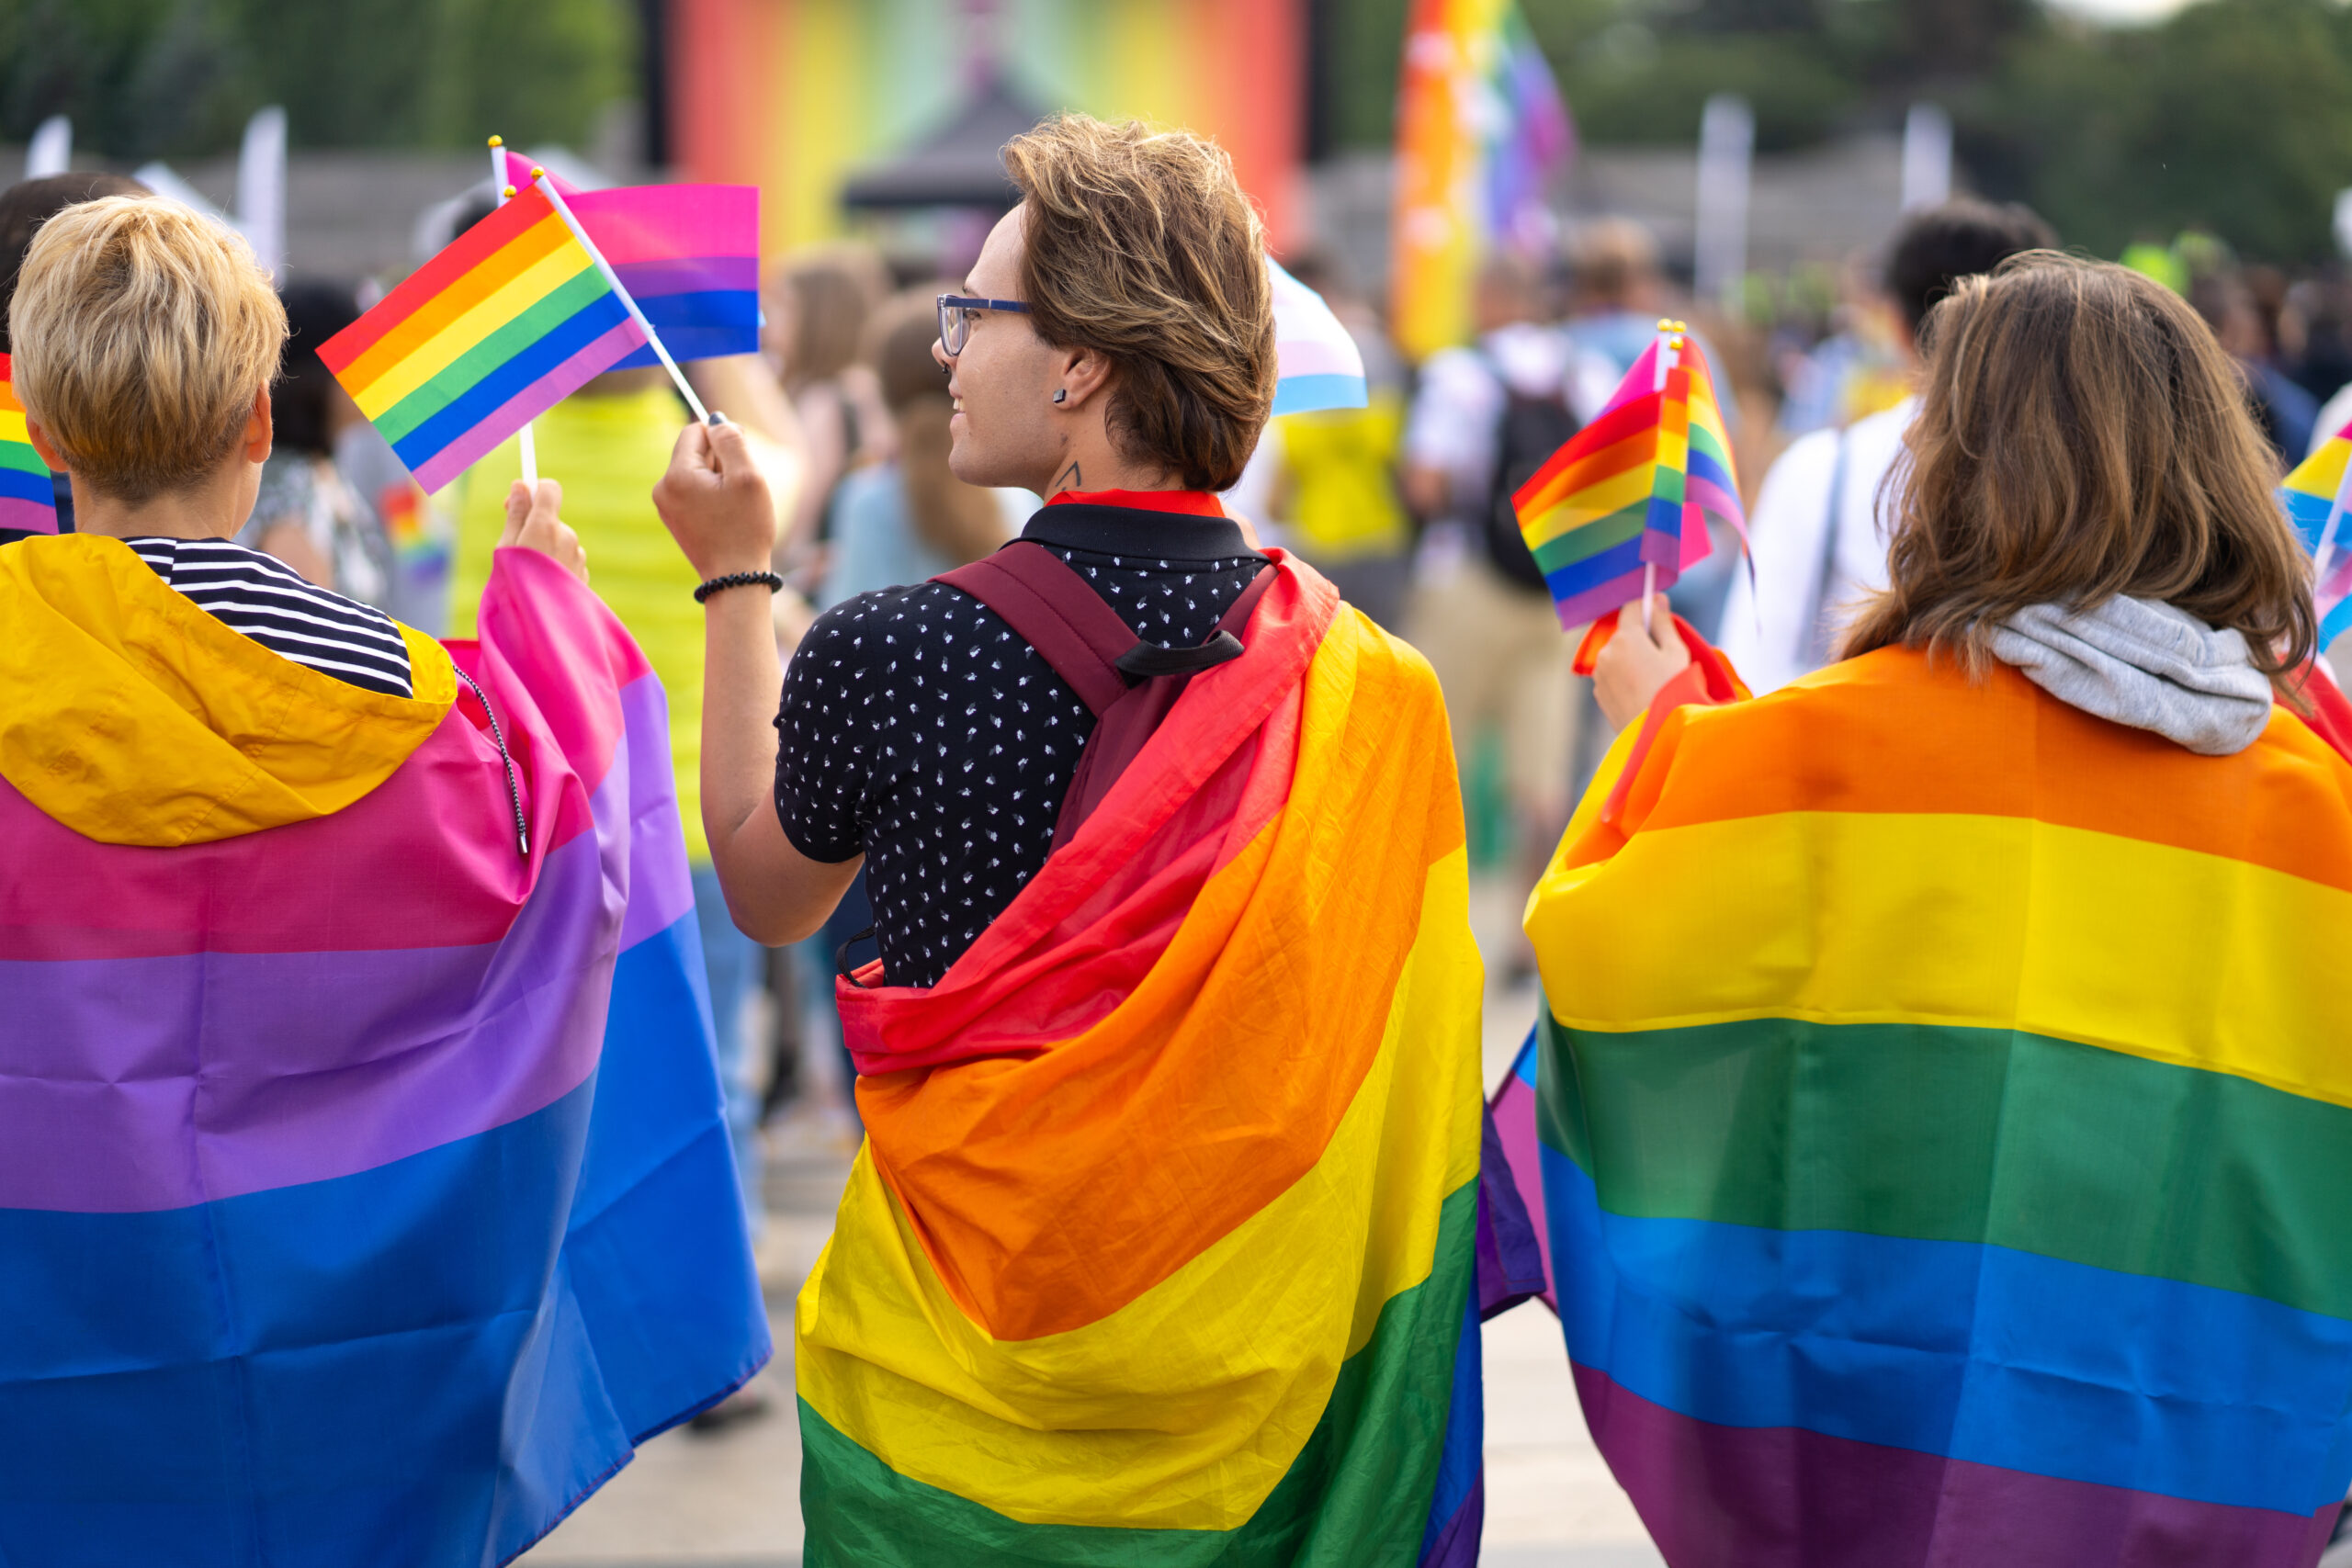 People wearing gay pride rainbow flags in street